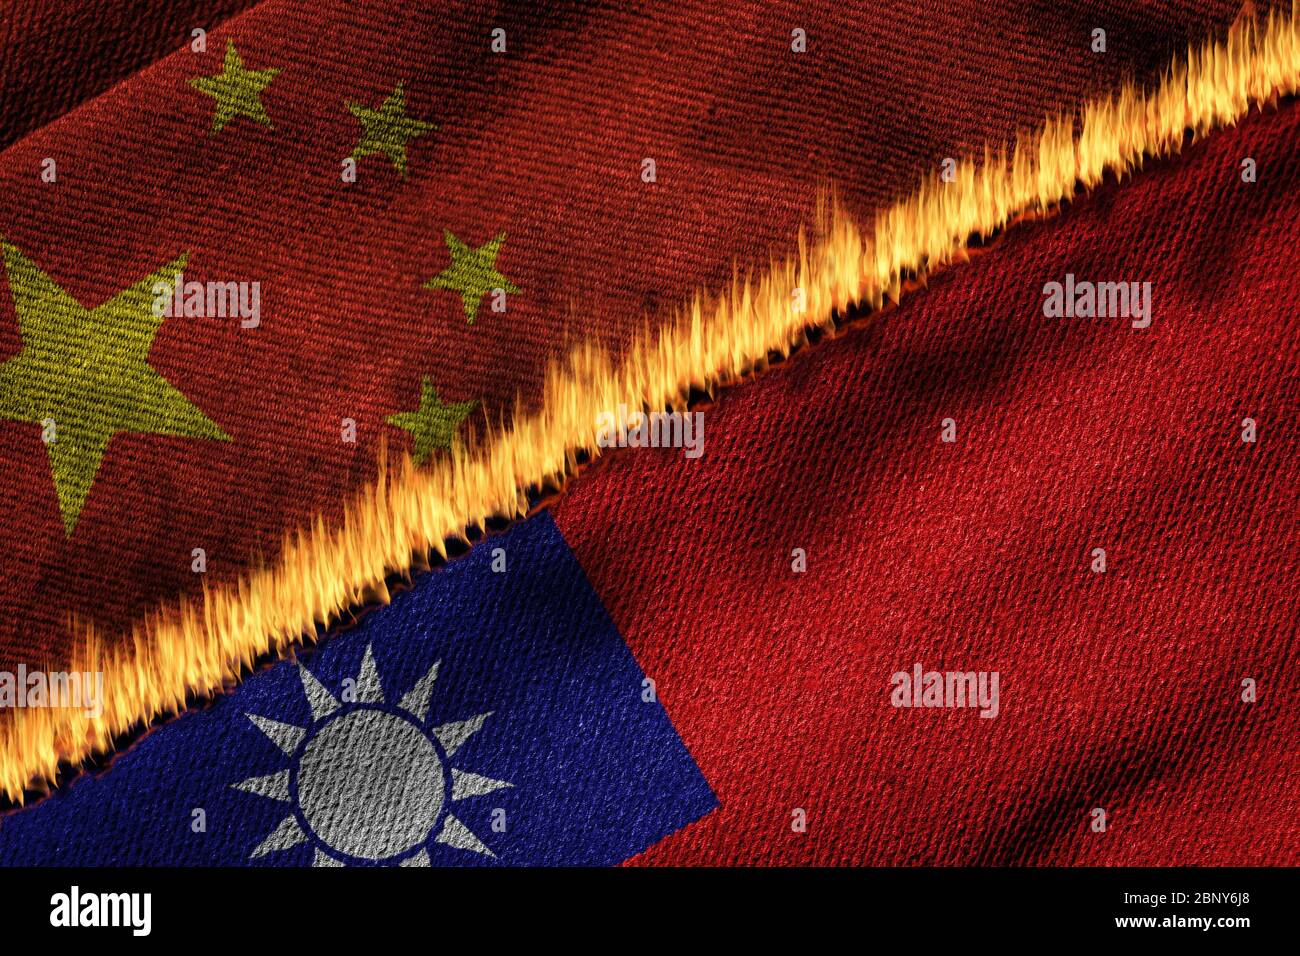 3D-Darstellung der Flaggen von China und Taiwan in Brand, die das Konzept der politischen Spannungen und Konflikte zwischen den beiden Entitäten illustrieren. Stockfoto